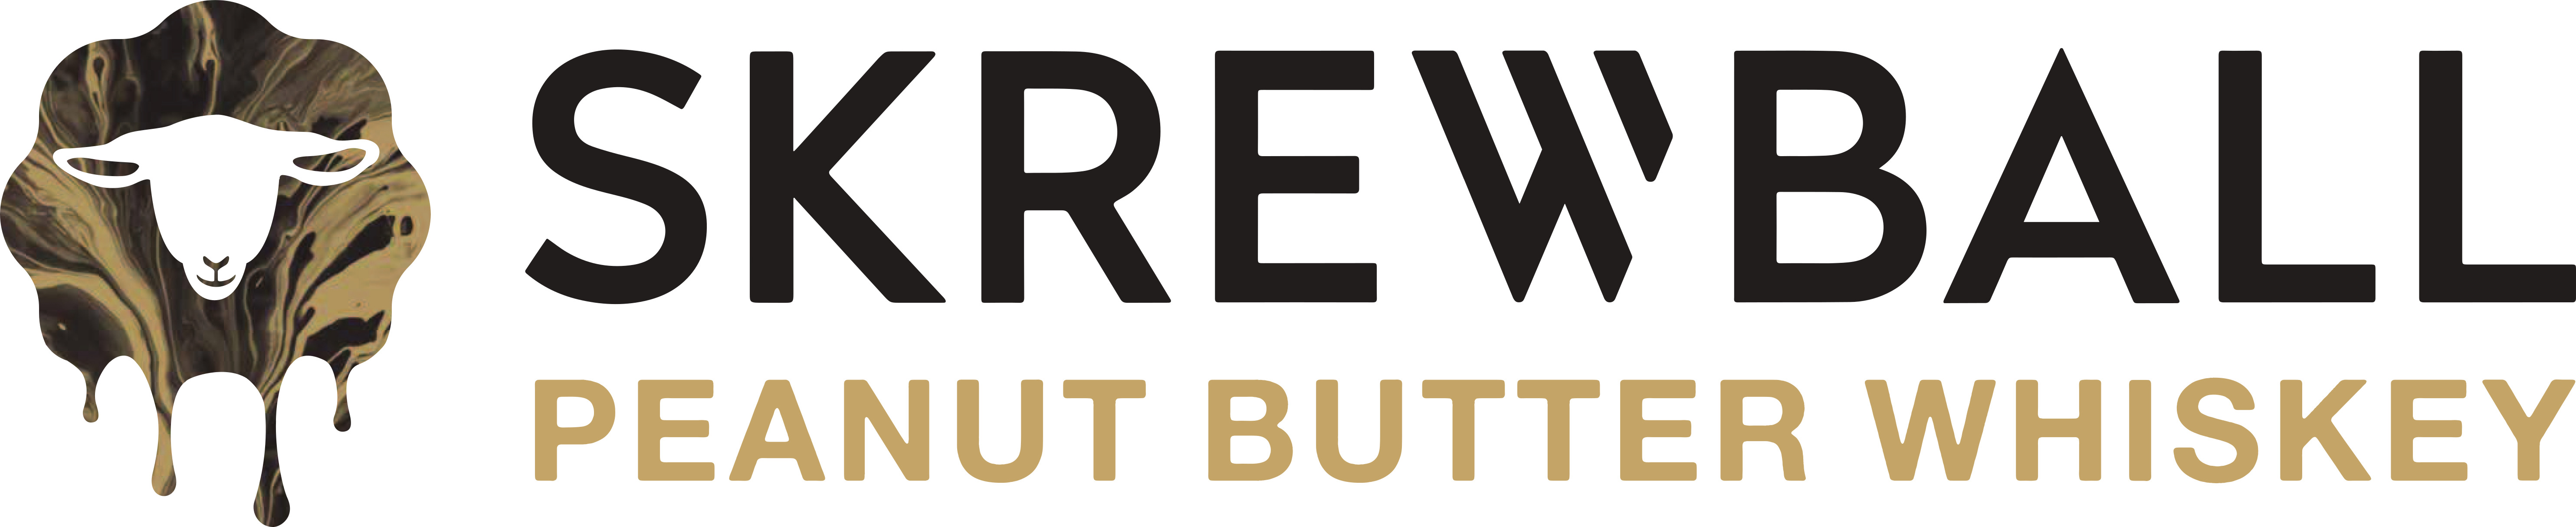 Skrewball logo